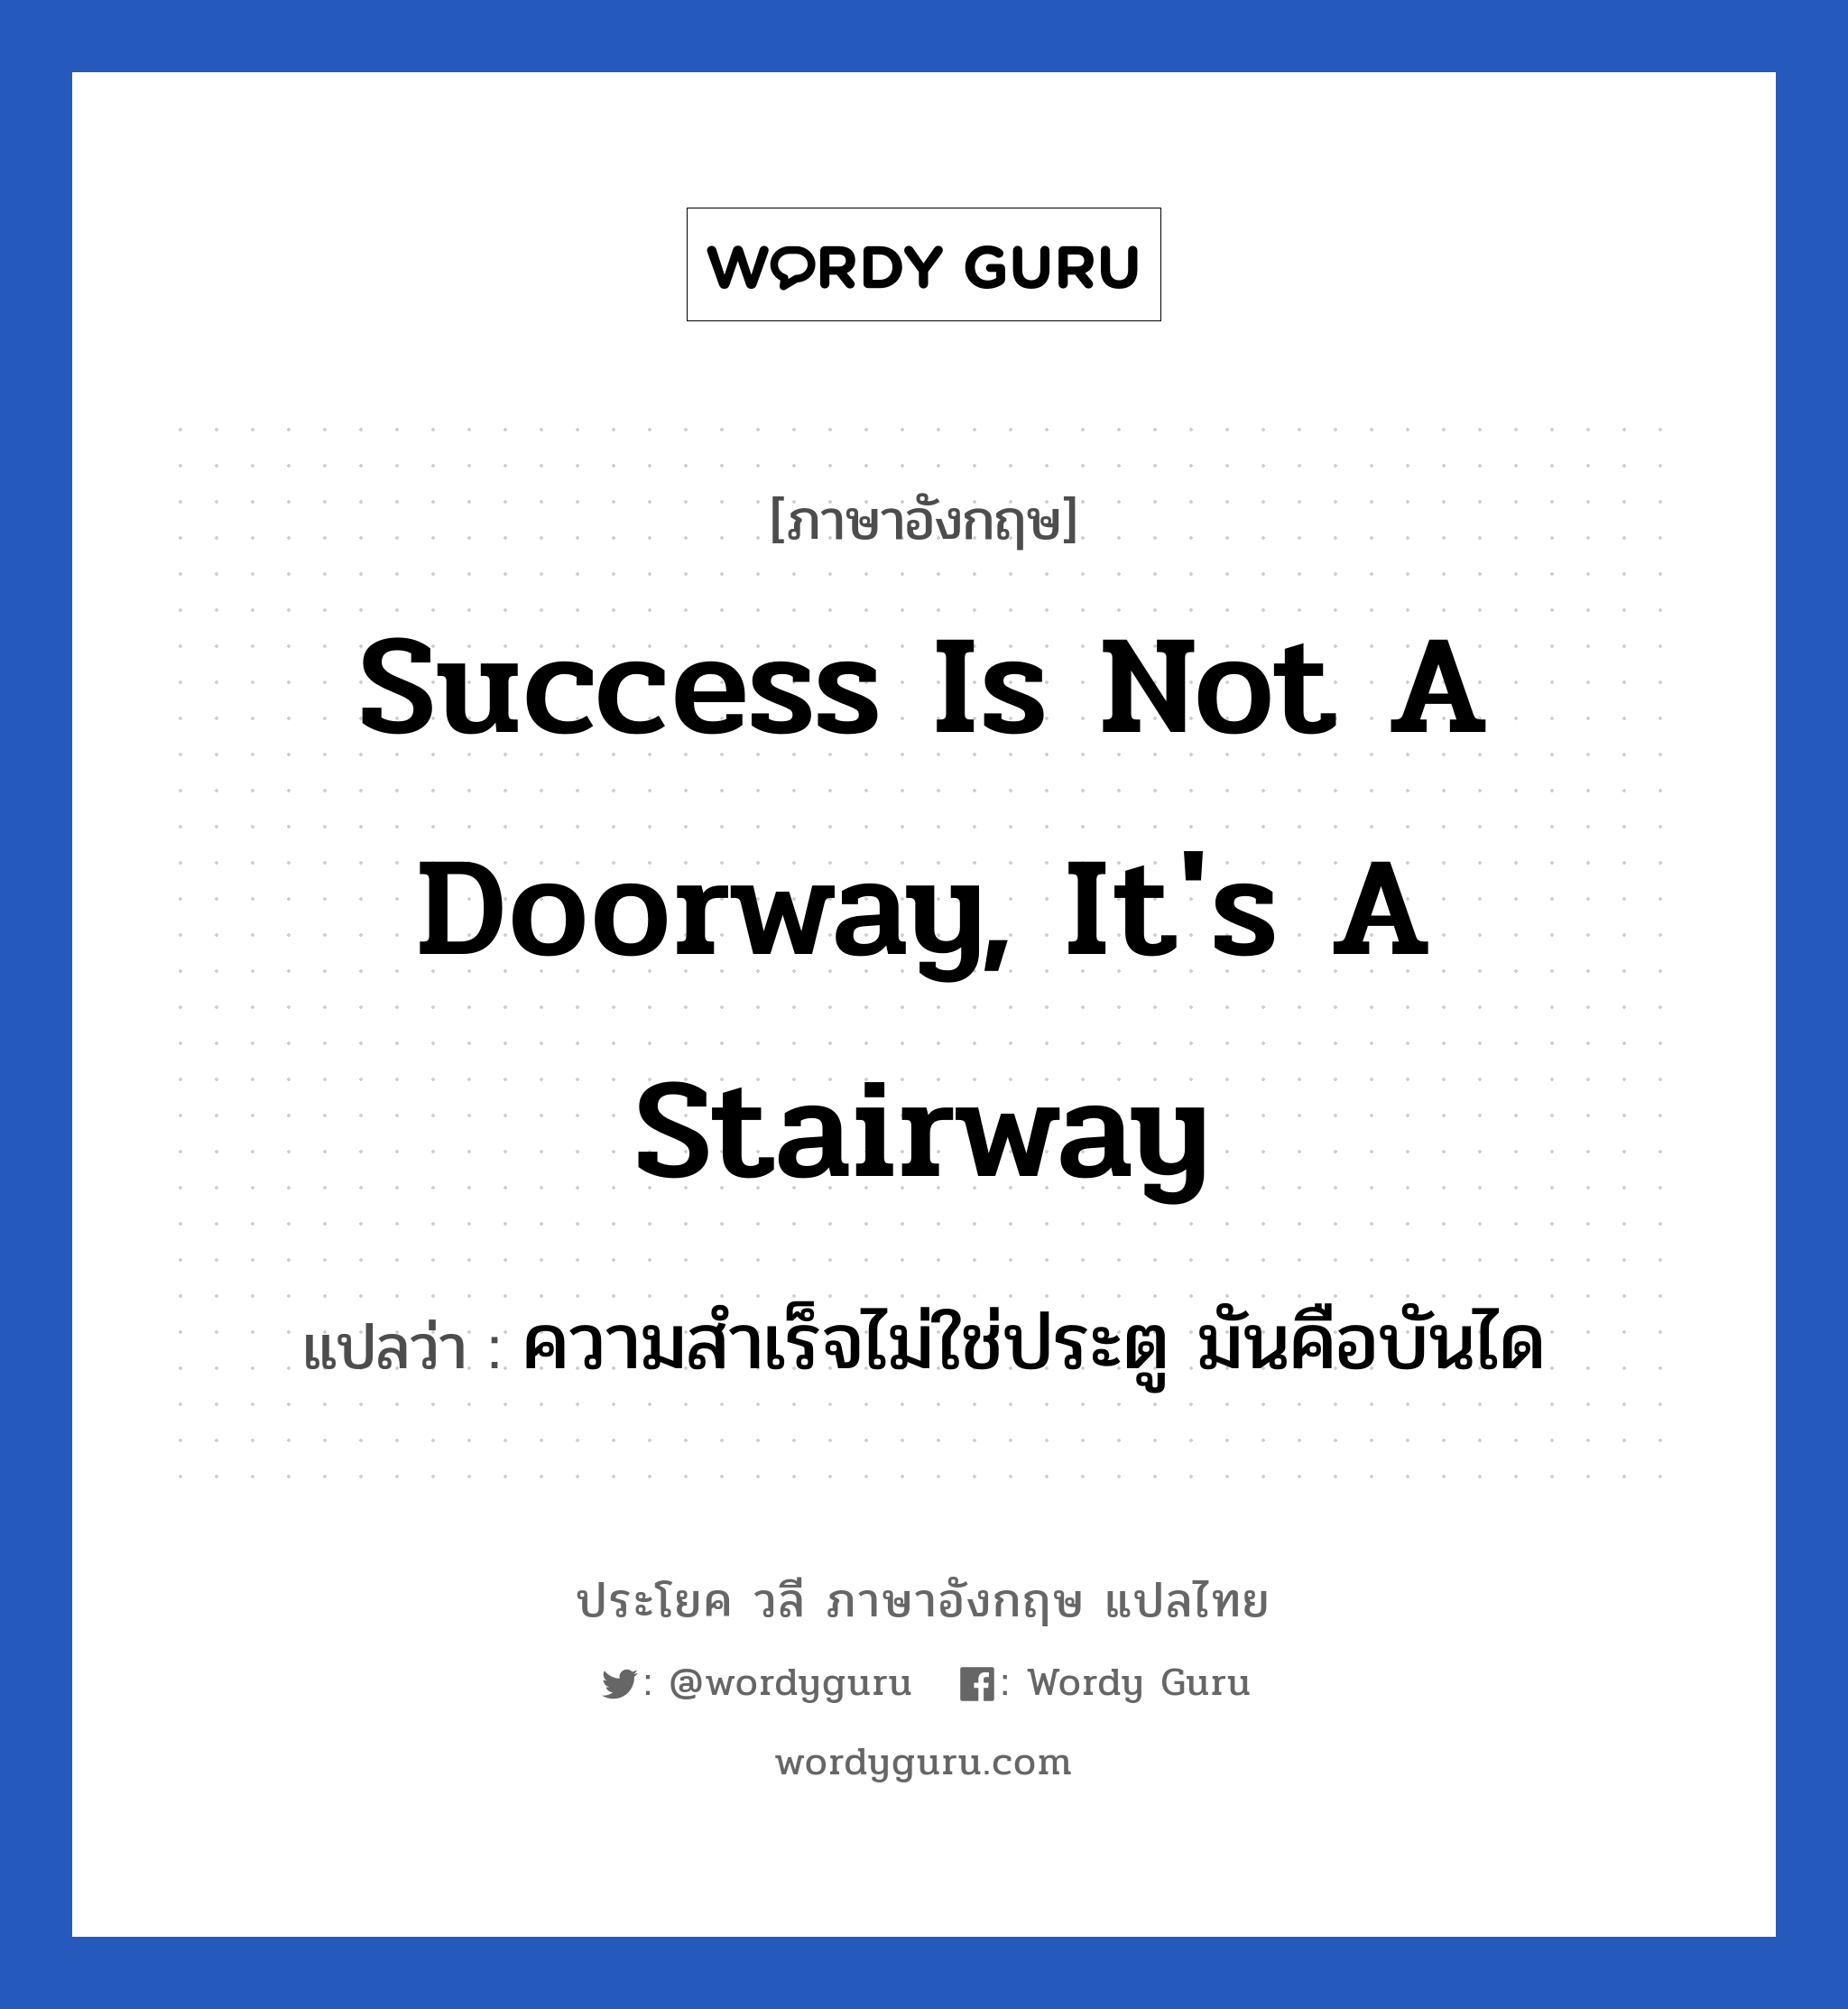 ความสำเร็จไม่ใช่ประตู มันคือบันได ภาษาอังกฤษ?, วลีภาษาอังกฤษ ความสำเร็จไม่ใช่ประตู มันคือบันได แปลว่า Success is not a doorway, it's a stairway หมวด ในที่ทำงาน